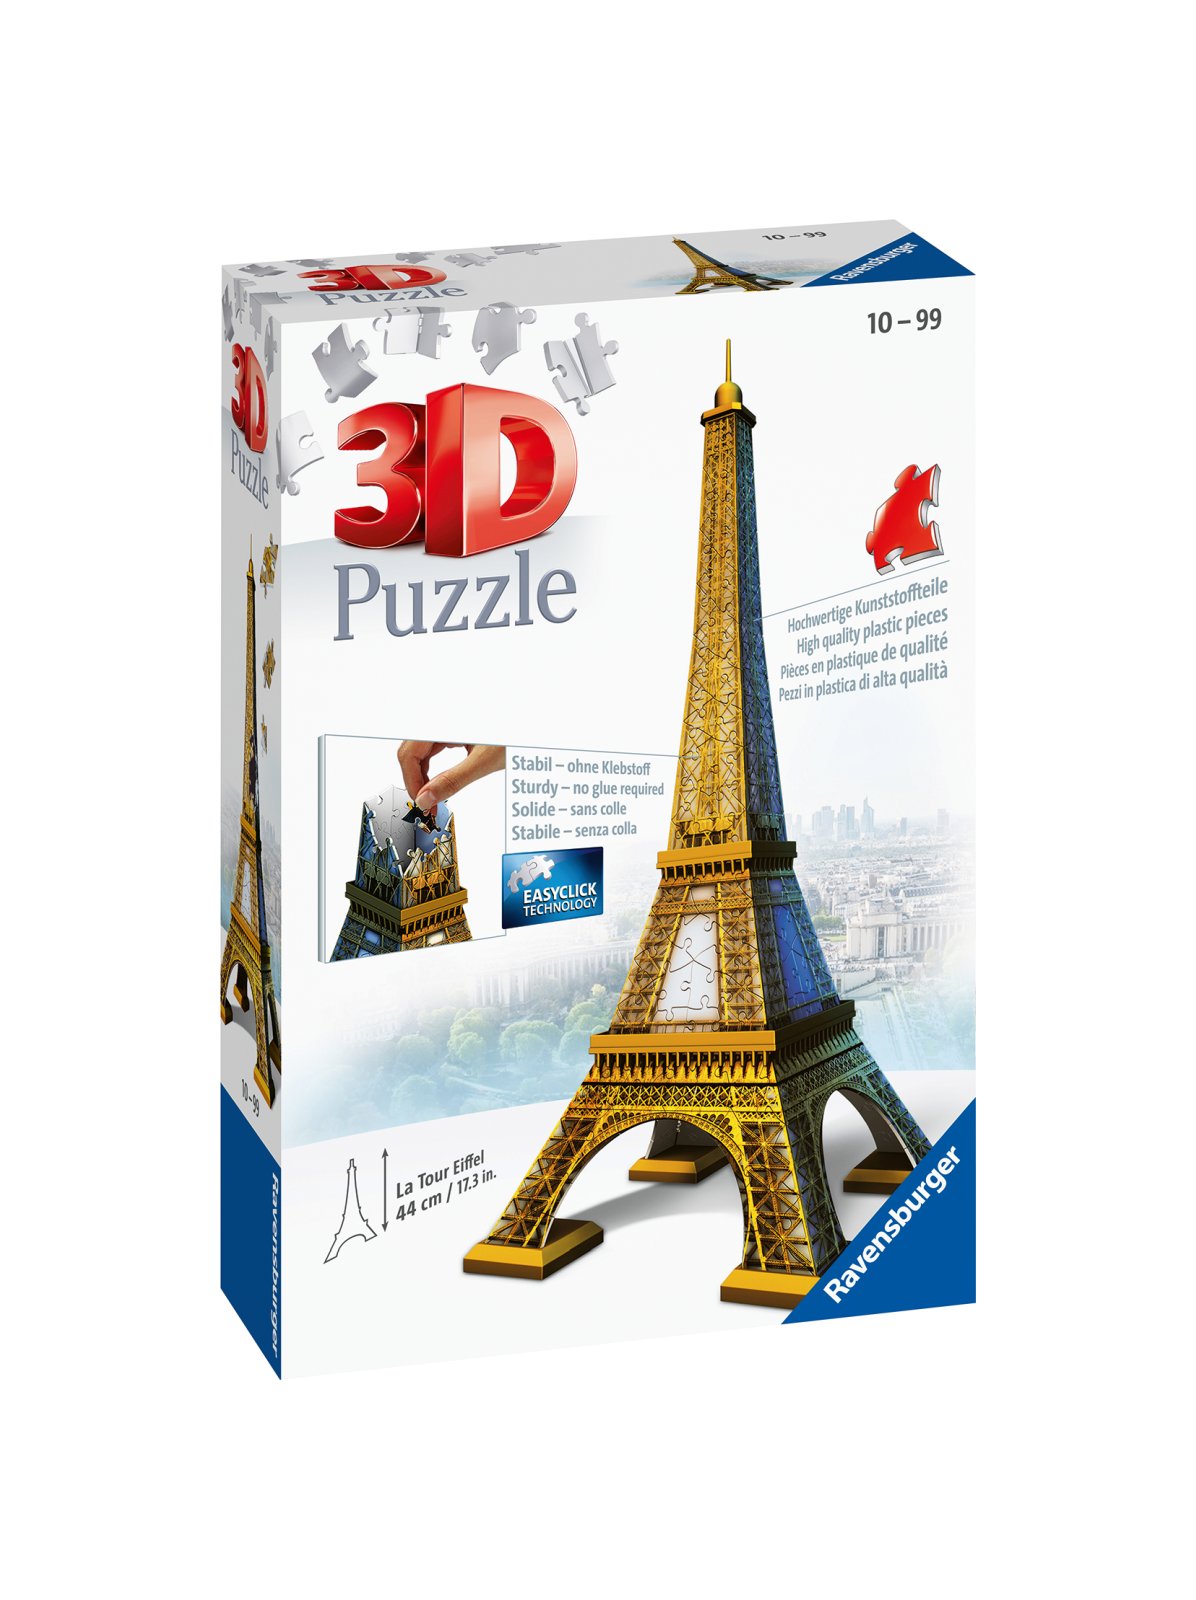 Ravensburger - 3d puzzle tour eiffel, parigi, 216 pezzi, 10+ anni - RAVENSBURGER 3D PUZZLE